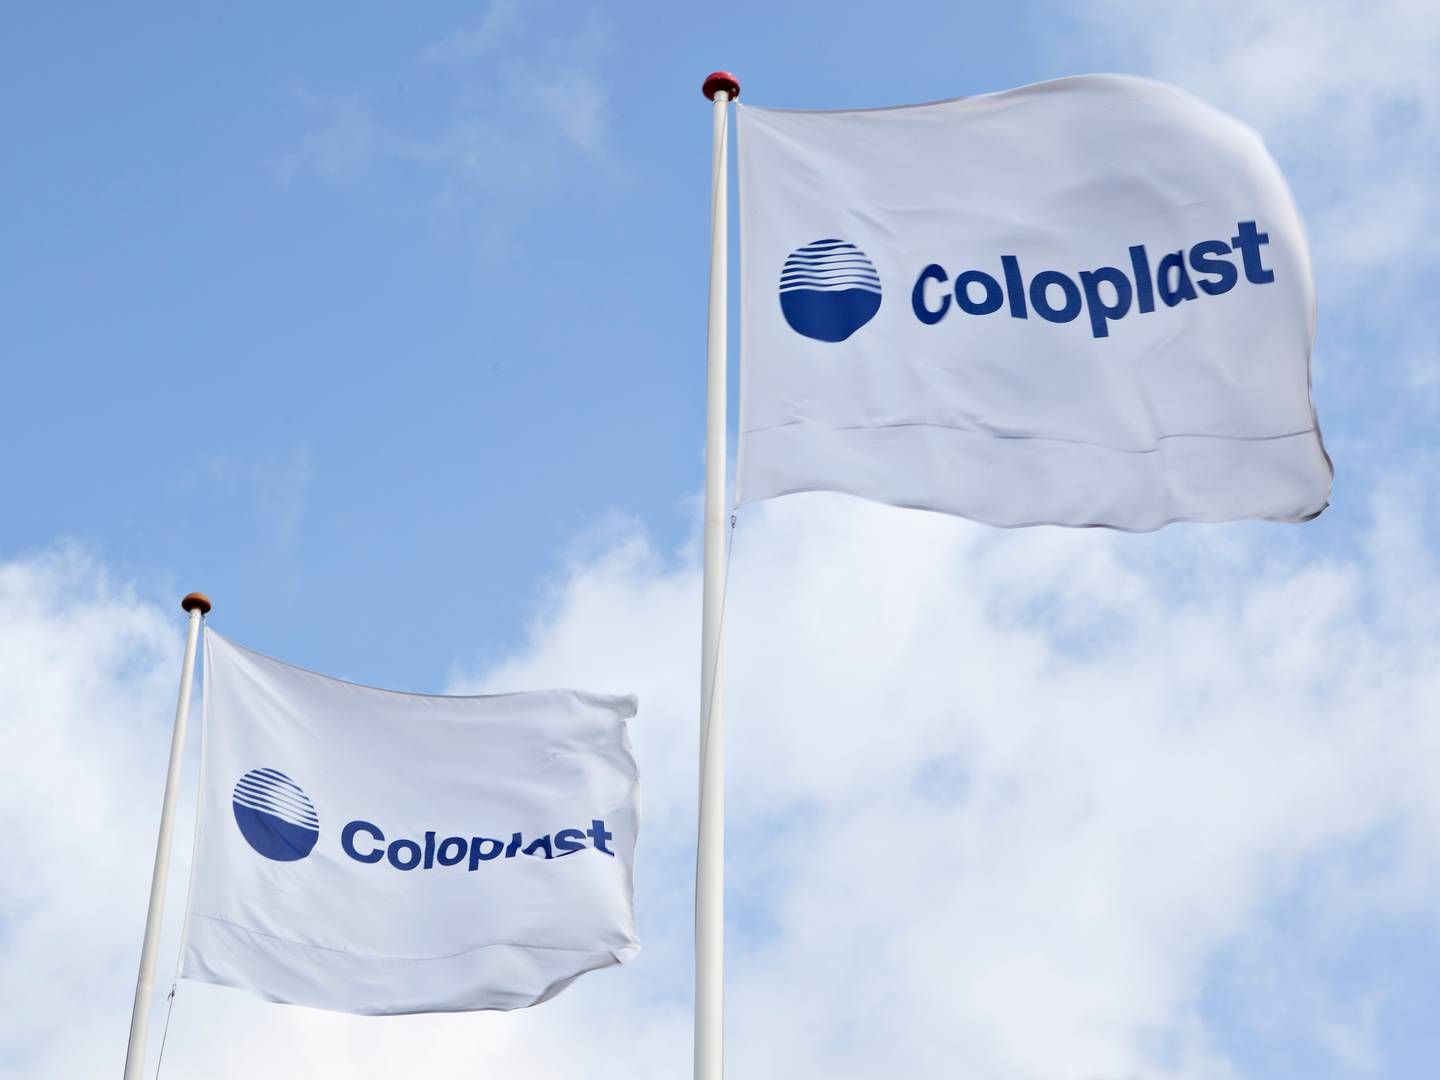 Coloplast skal bruge milliarderne fra aktiesalget til at finansiere købet af det islandske sårplejeselskab Kerecis, som det danske medicoselskab indgik en købsaftale med i starten af juli. | Foto: Coloplast / Pr